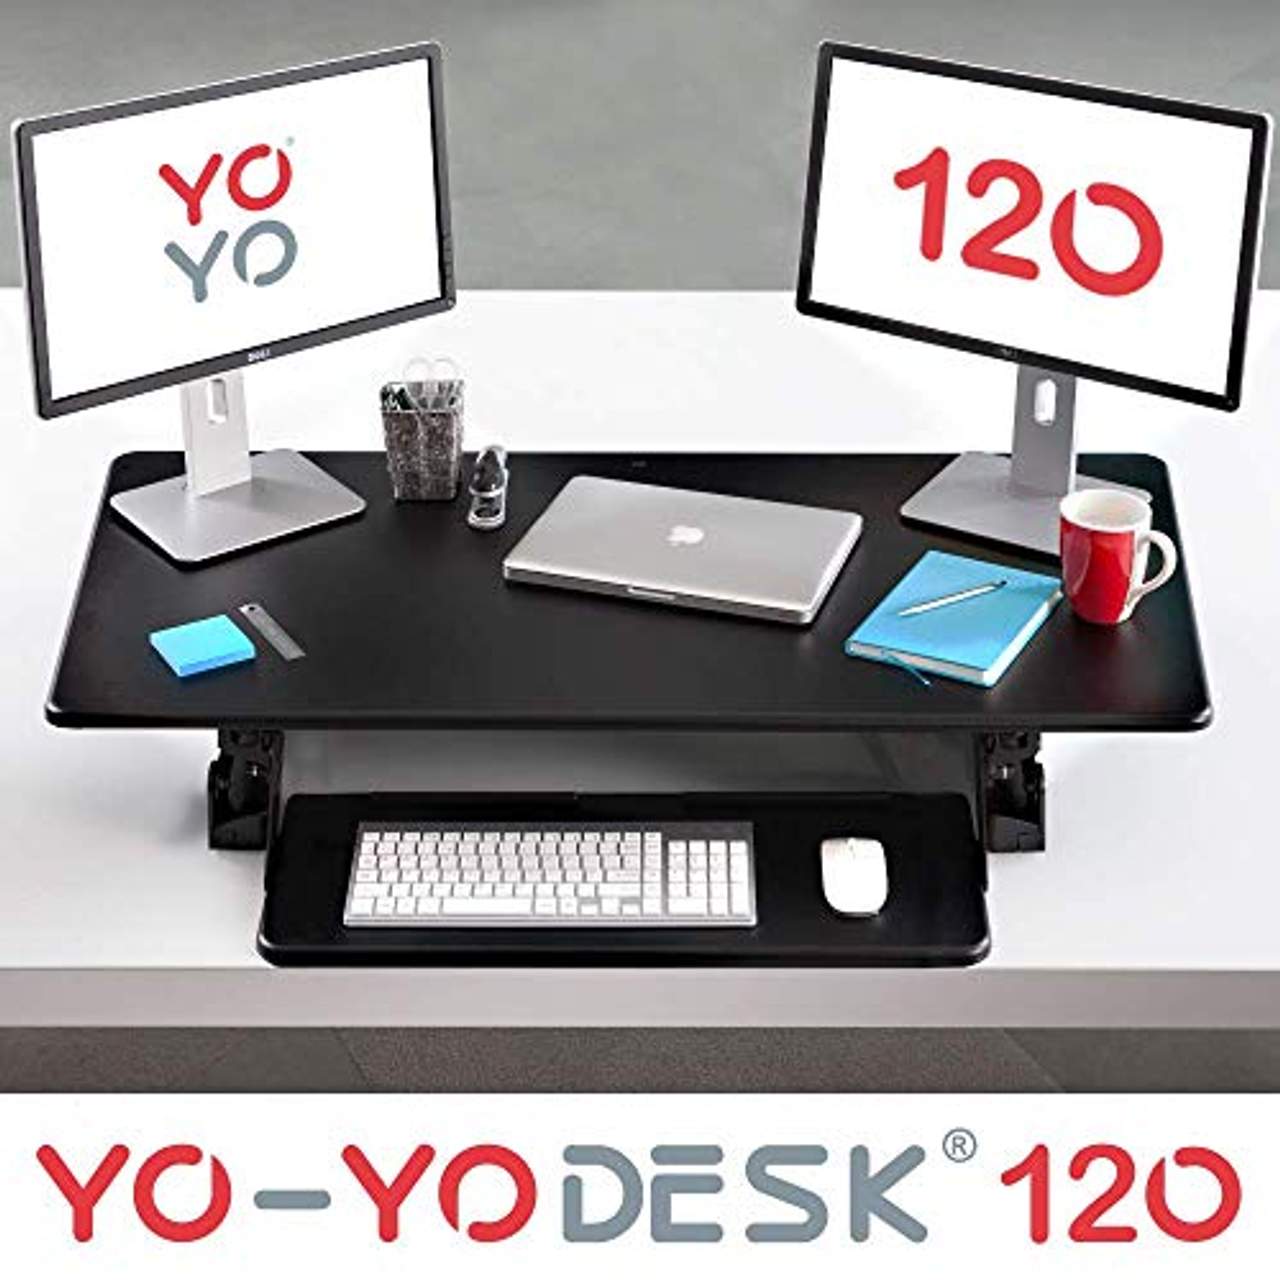 Yo-Yo DESK 120 Stehpult für Ihren ergonomischen Steharbeitsplatz